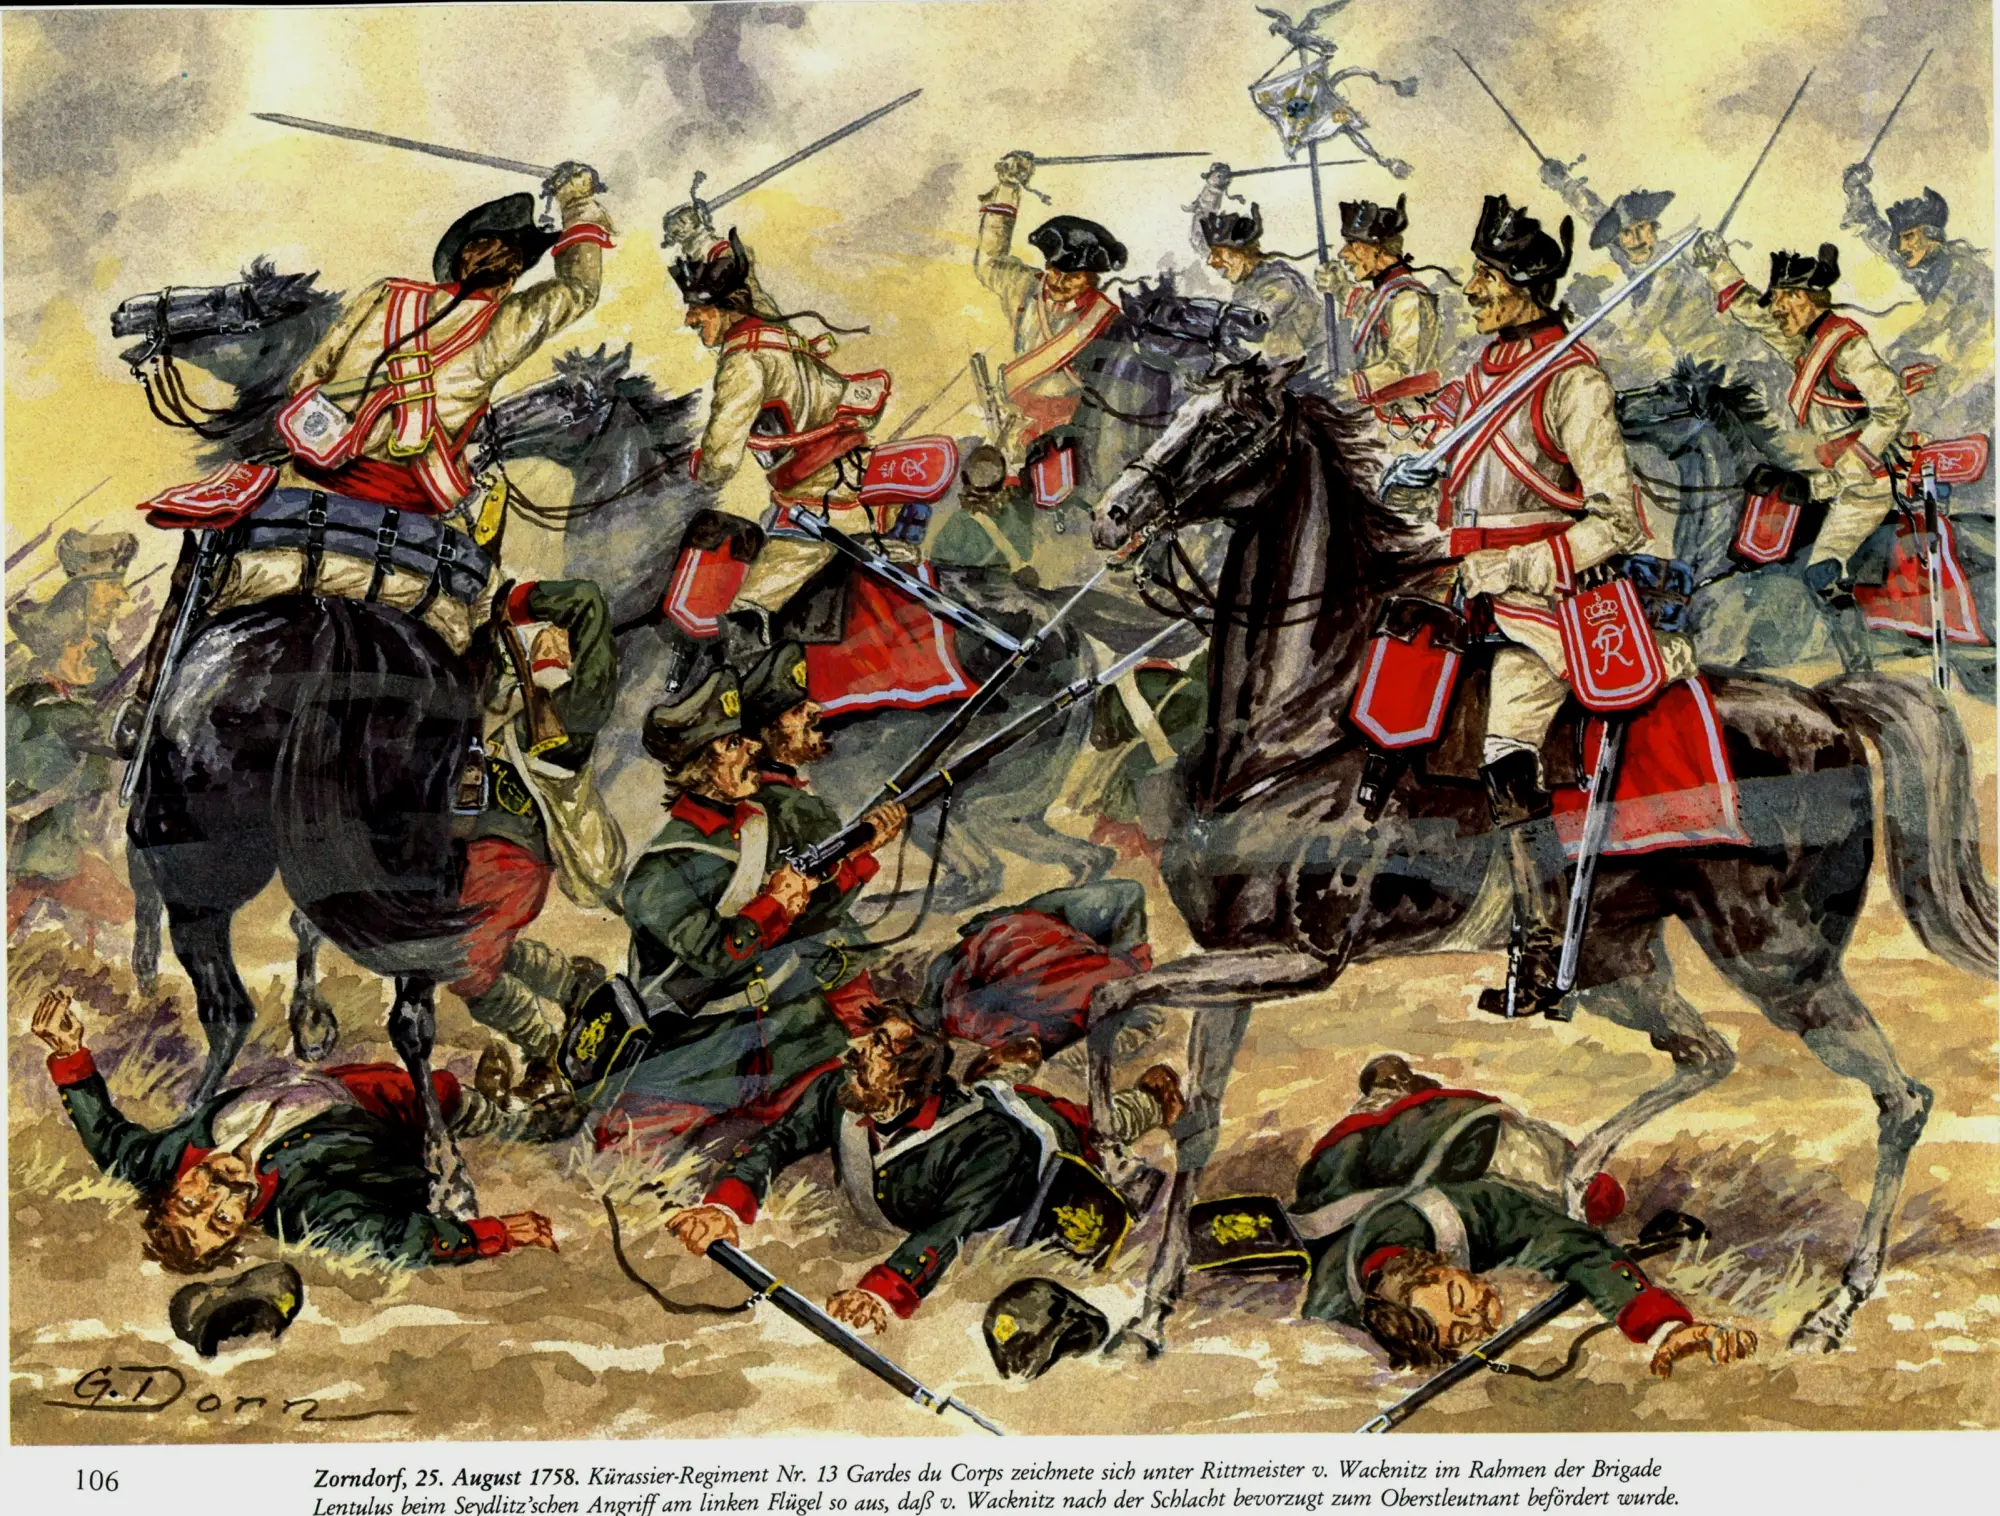 曹恩道夫之战中，塞德利茨的骑兵横扫了俄军步兵